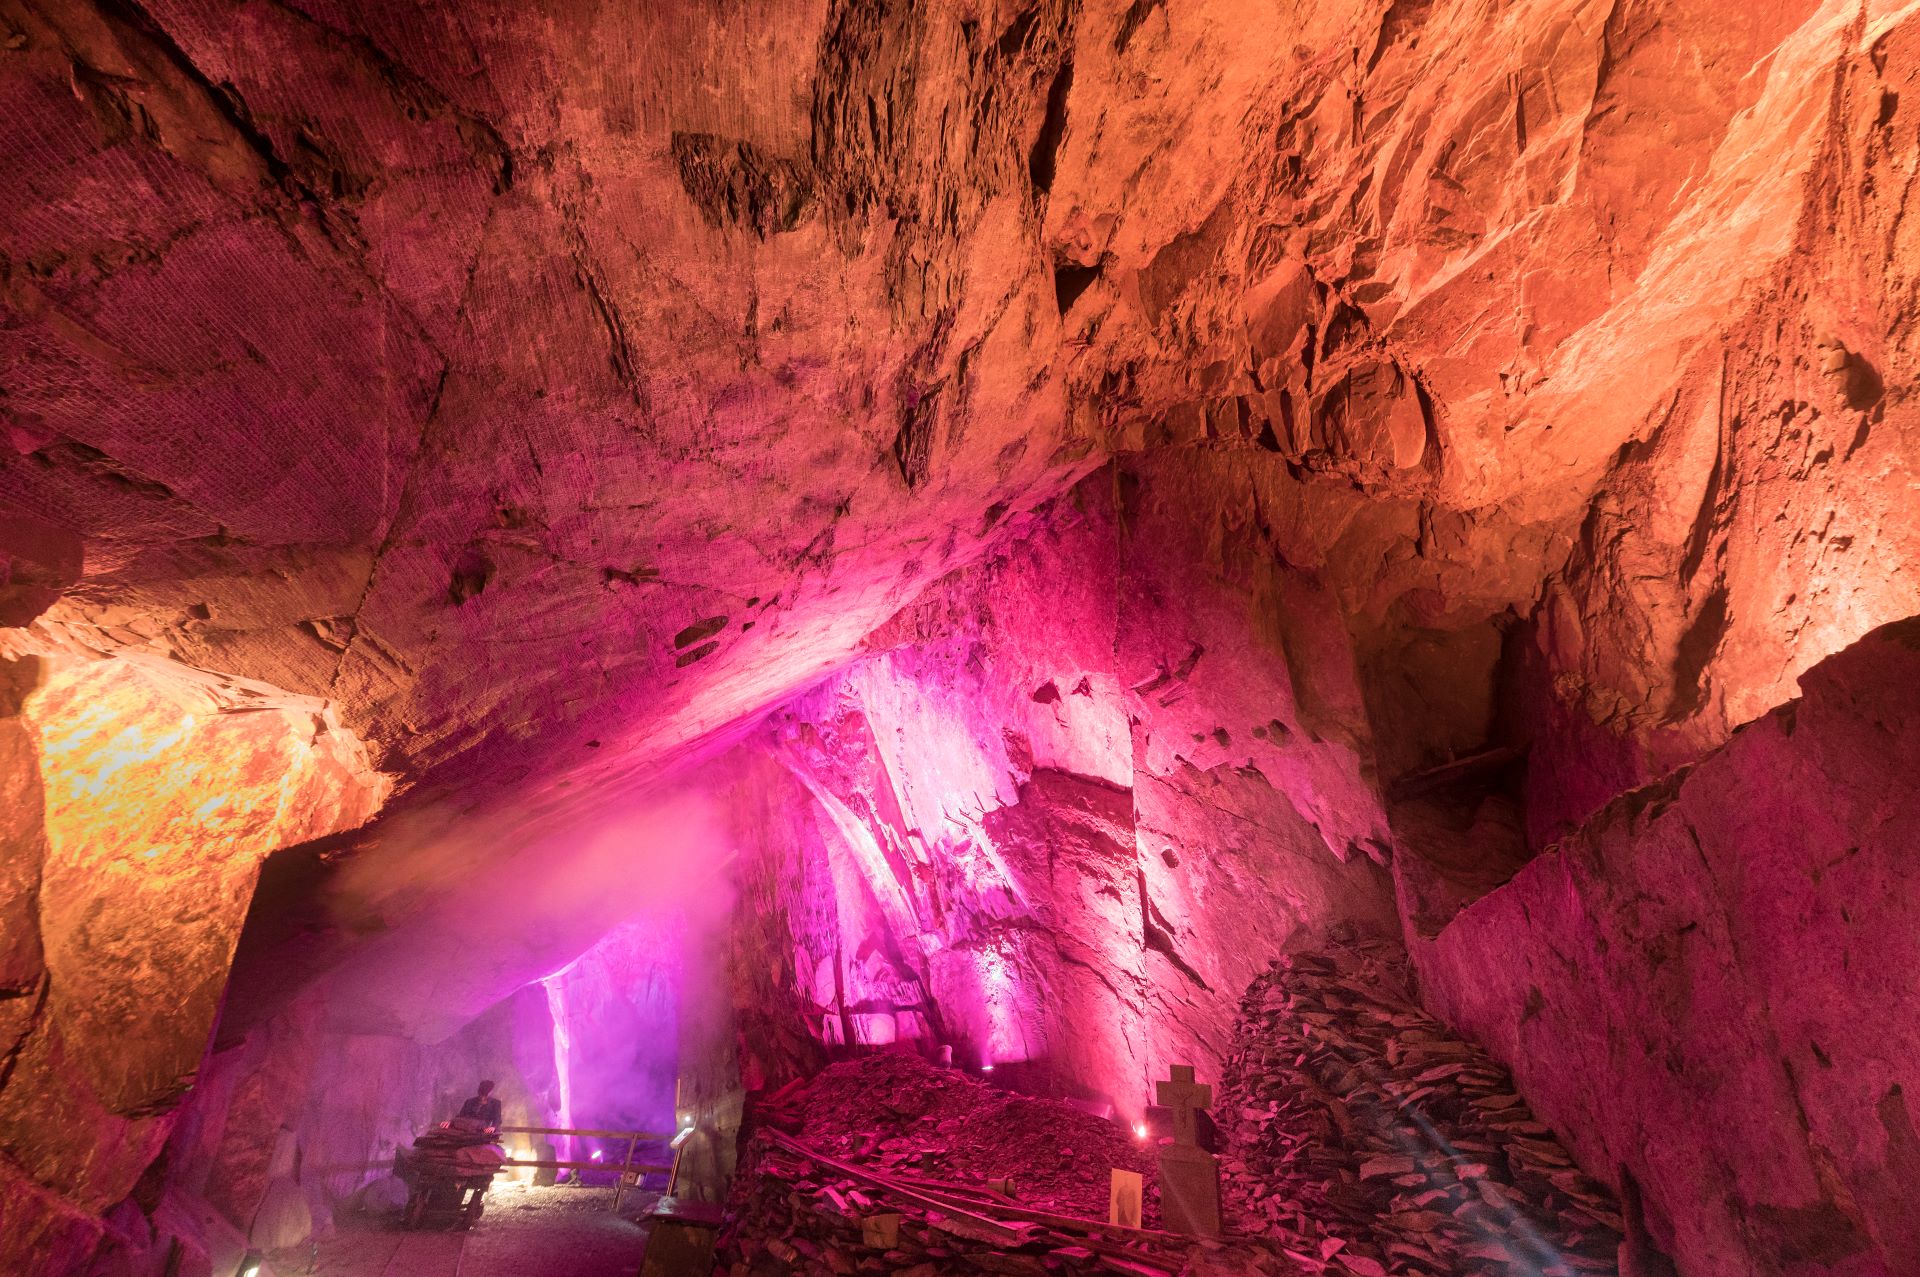 Dans les profondeurs du sous-sol, un spectacle de lumière a lieu. Des lumières roses et jaunes brillent dans la grotte minière.